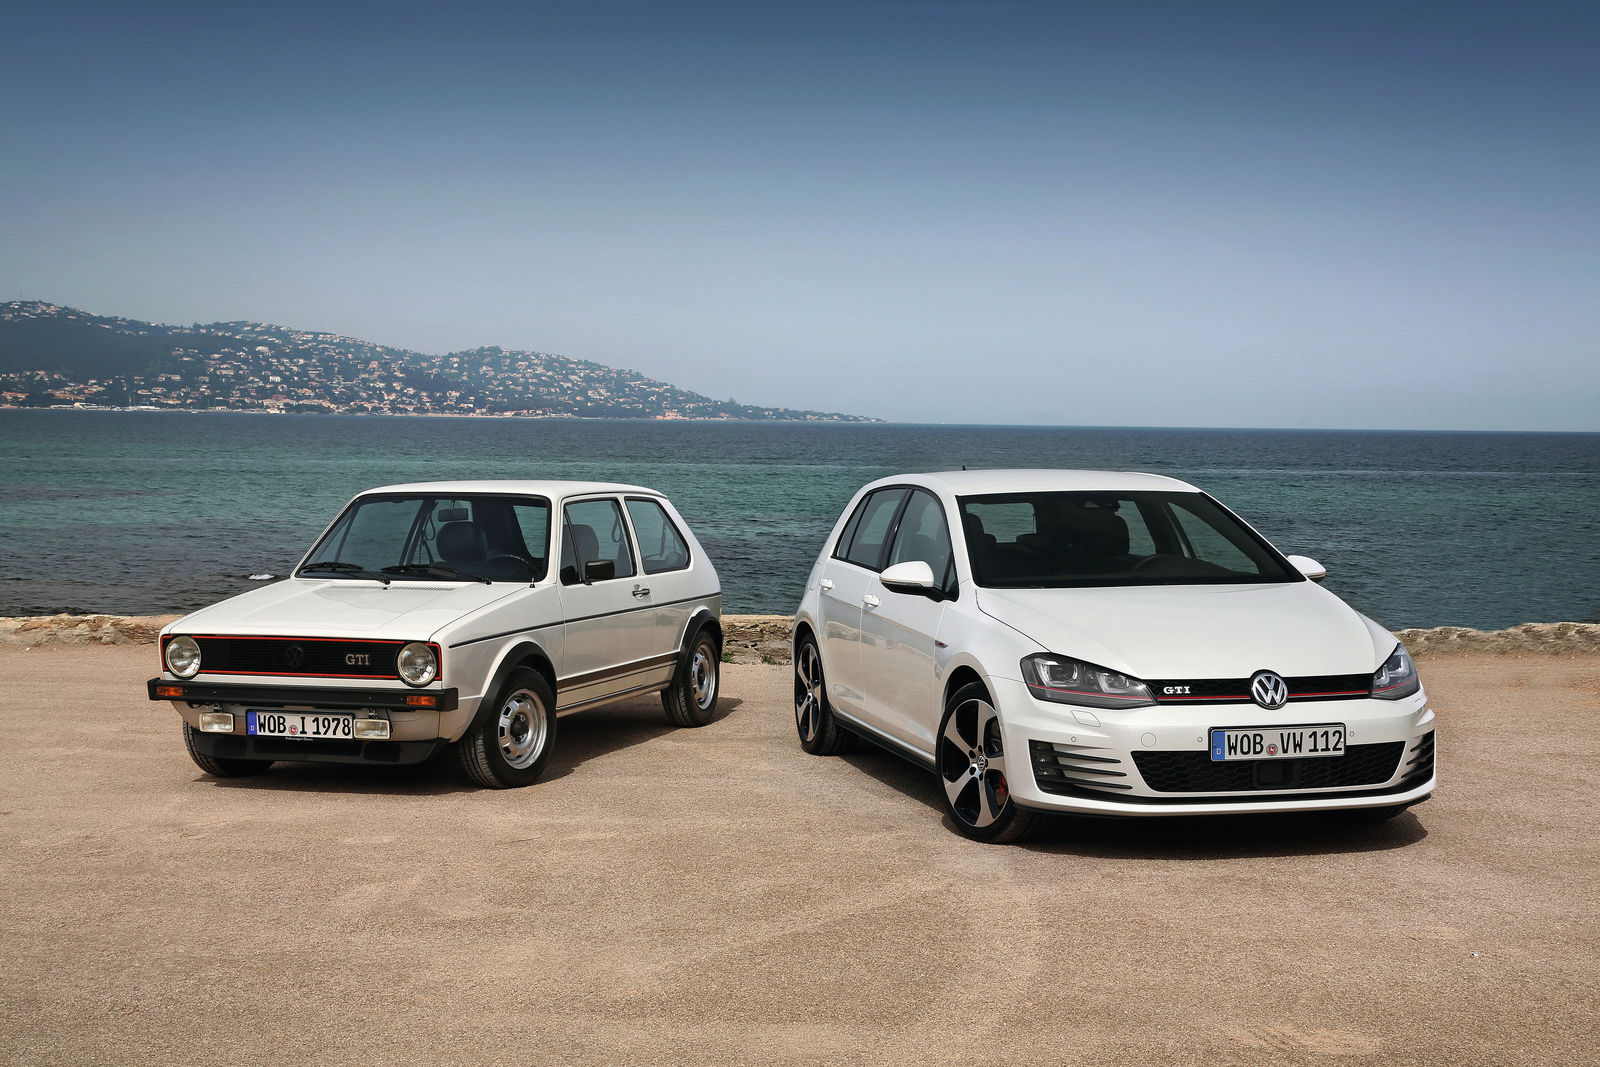 Volkswagen GTI and Volkswagen Golf I GTI